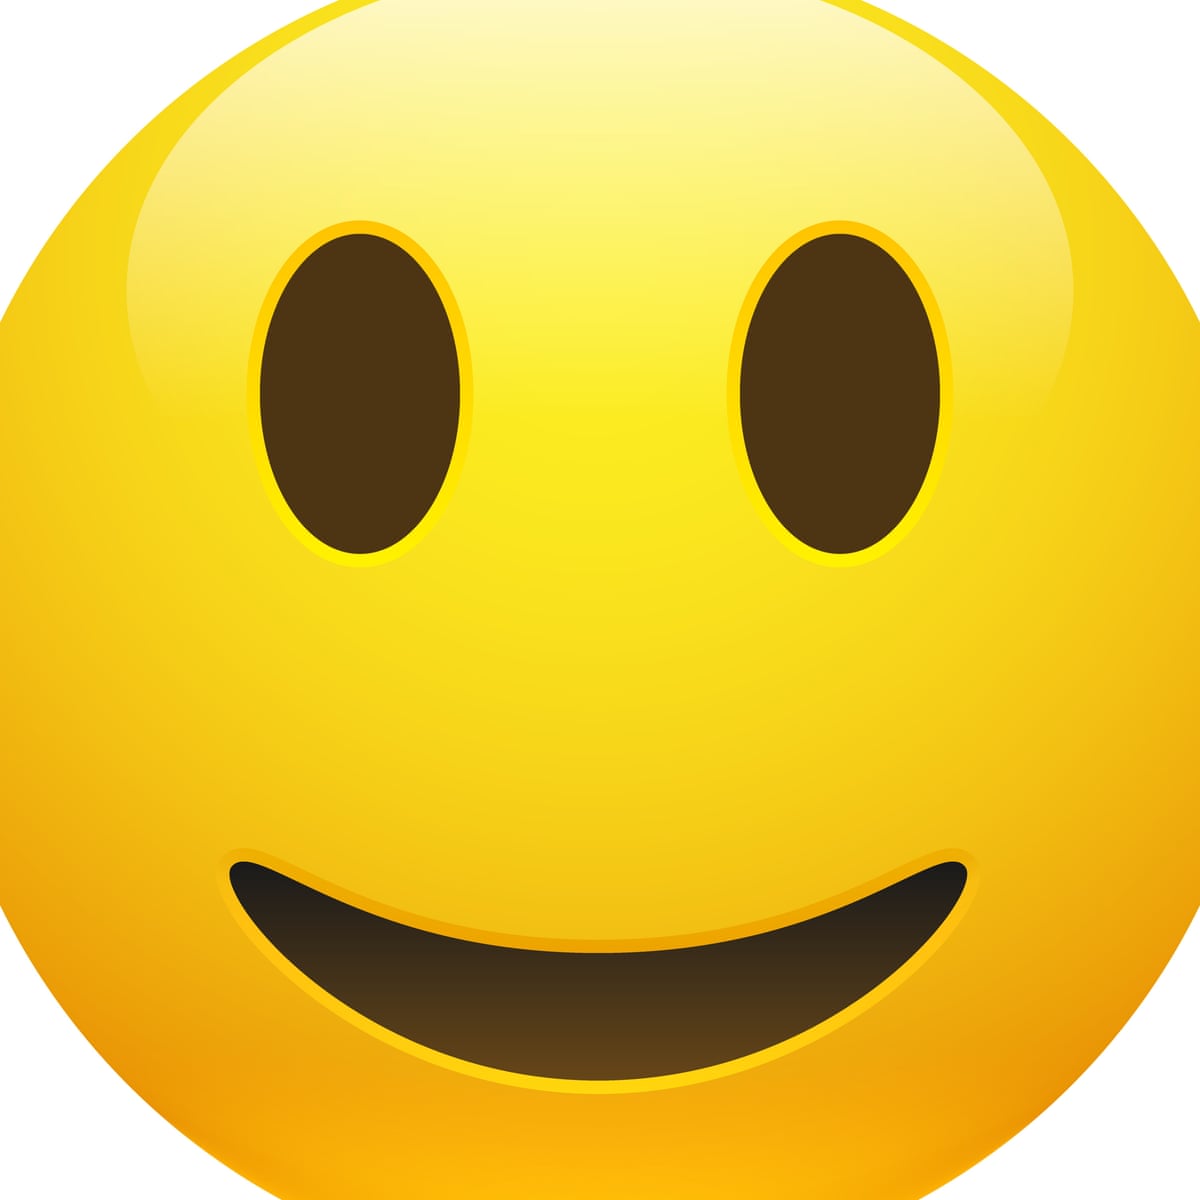 Smile emoji